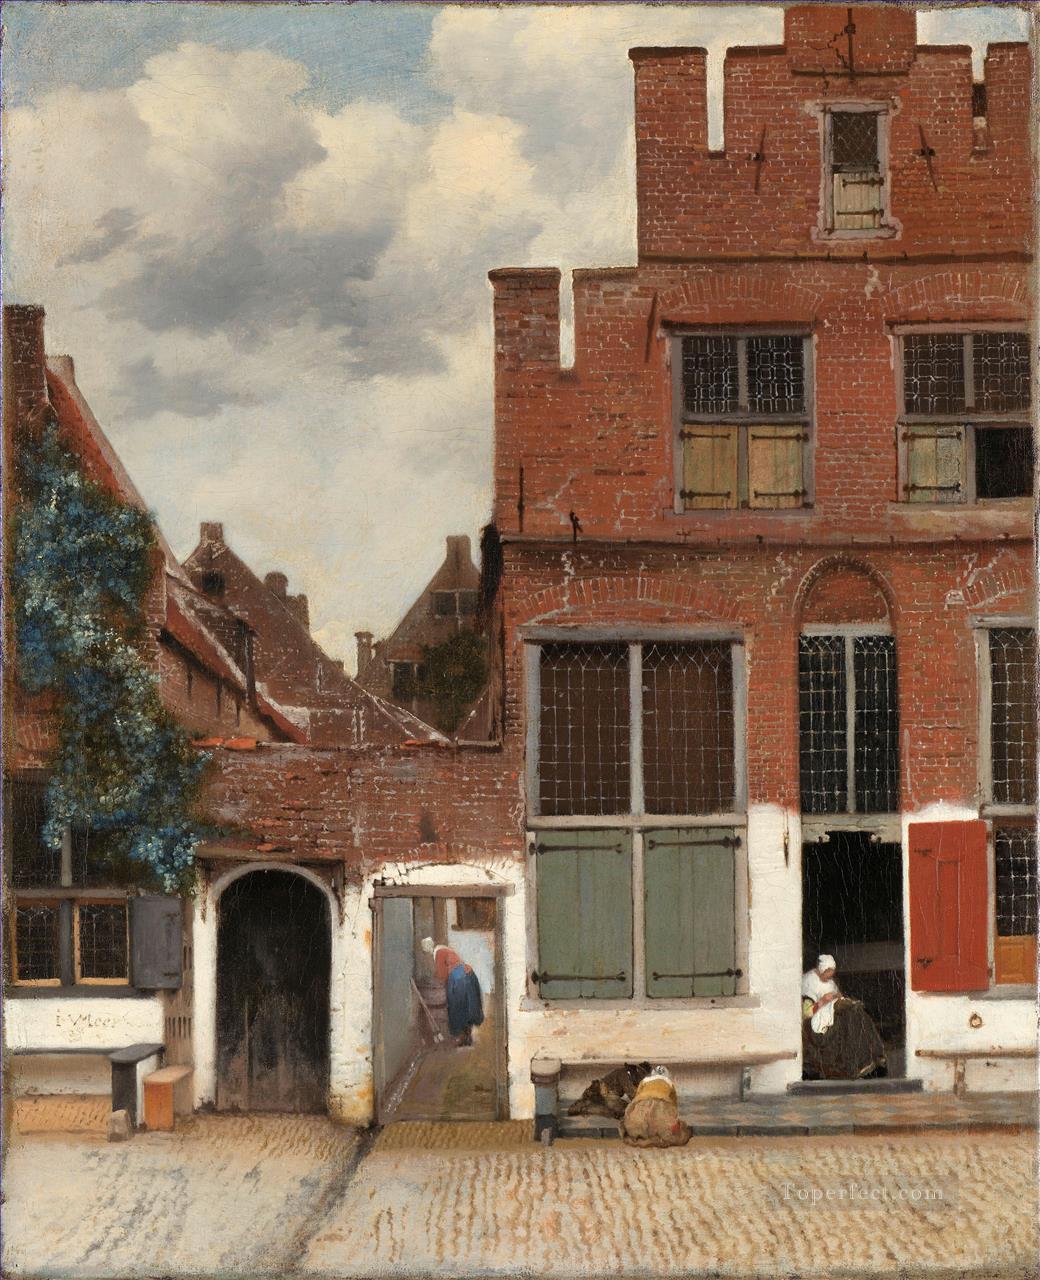 リトルストリート・バロックとして知られるデルフトの家々の眺め ヨハネス・フェルメール油絵